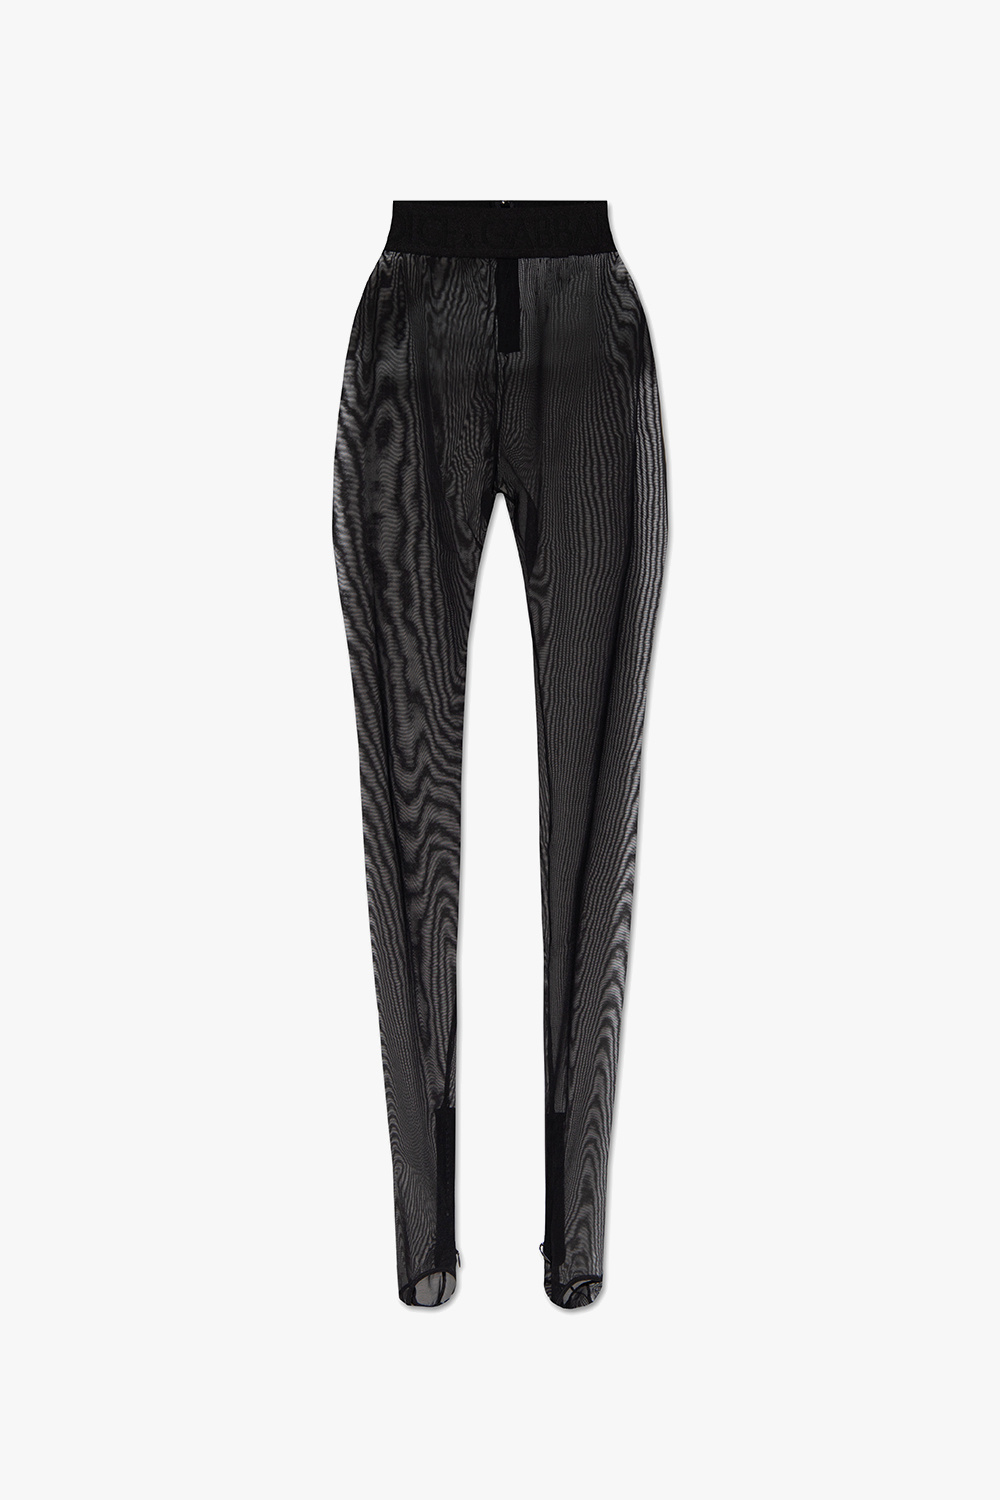 IetpShops Denmark - Patterned leggings Dolce & Gabbana - Чоловічі